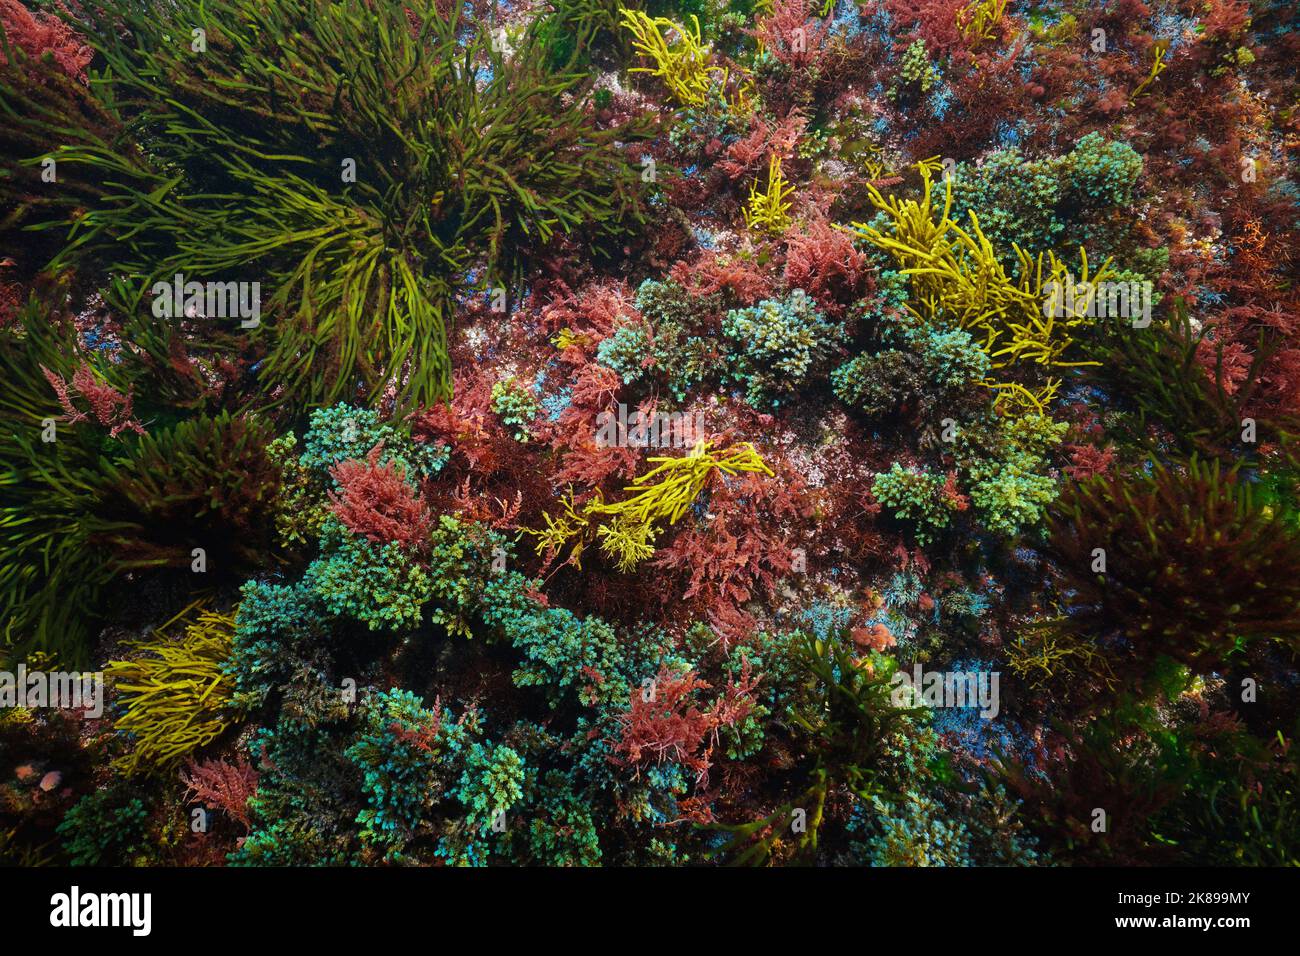 Farbenprächtiger Meeresboden mit verschiedenen Algen von oben gesehen, natürliche Unterwasserszene, Atlantischer Ozean, Spanien, Galicien Stockfoto